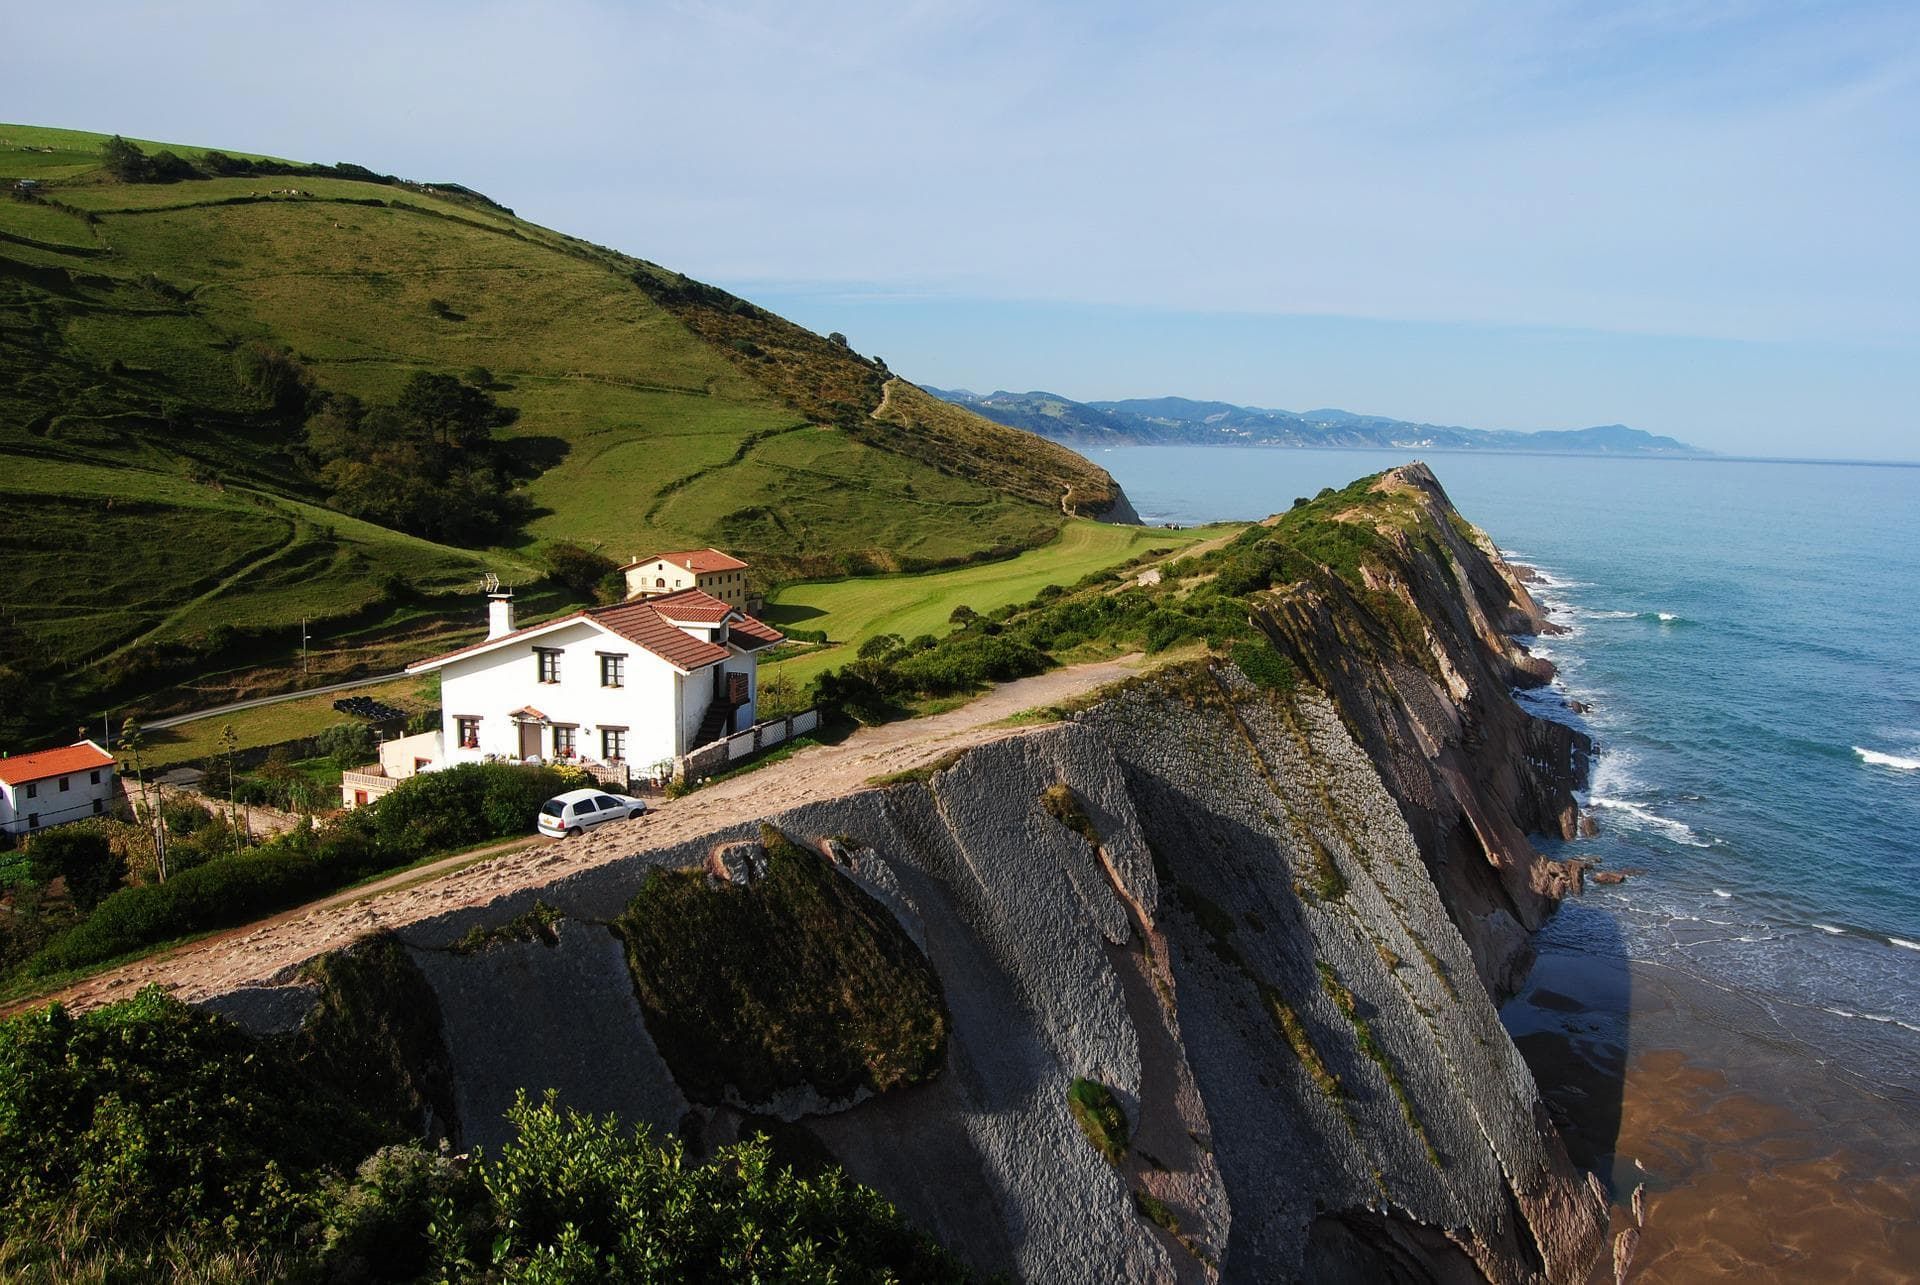 Travel through the Basque Country: 3-day drive along Gipuzkoa’s coastline